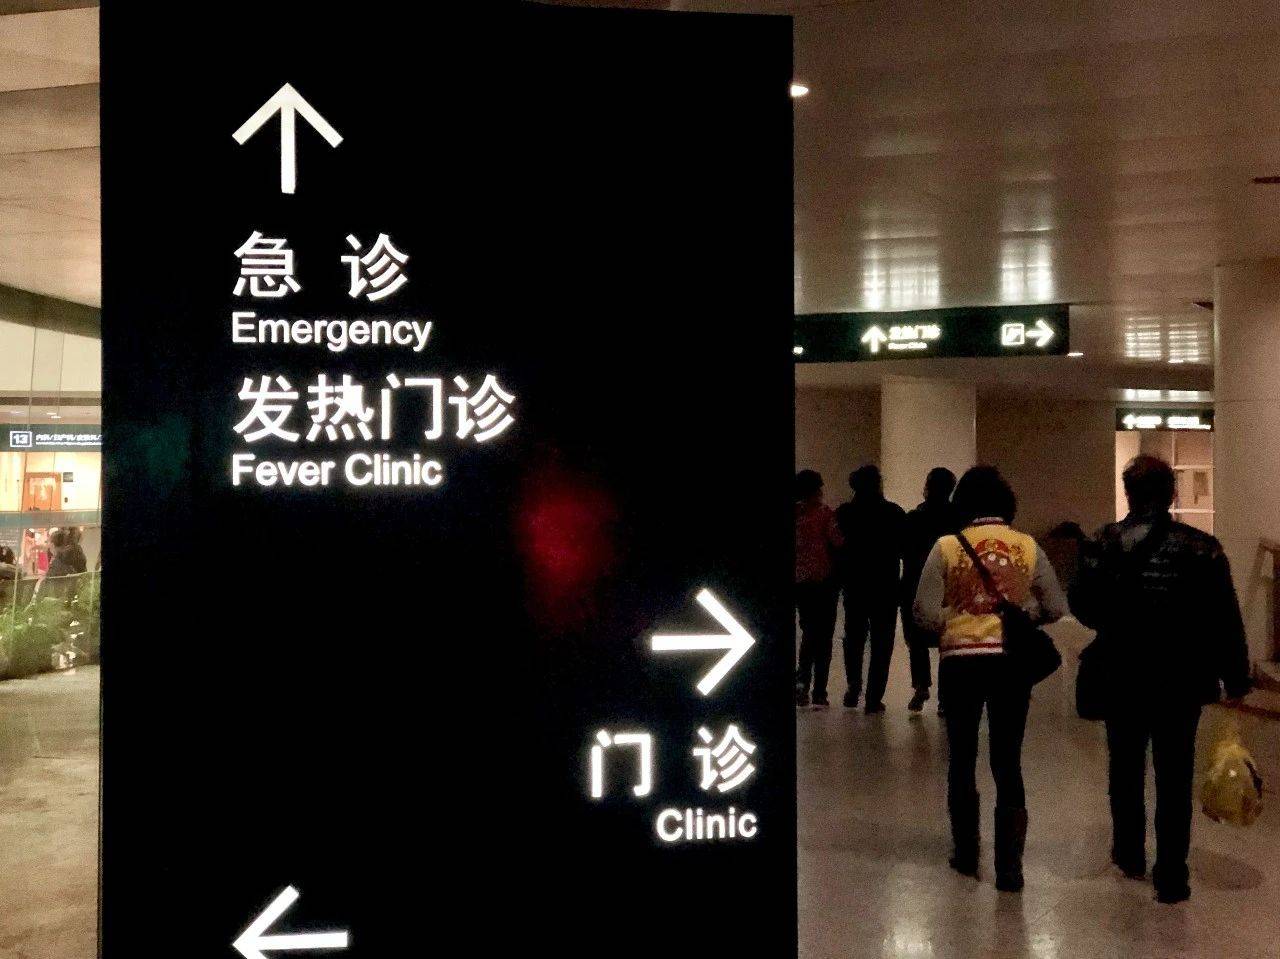 上海长海医院急诊图片